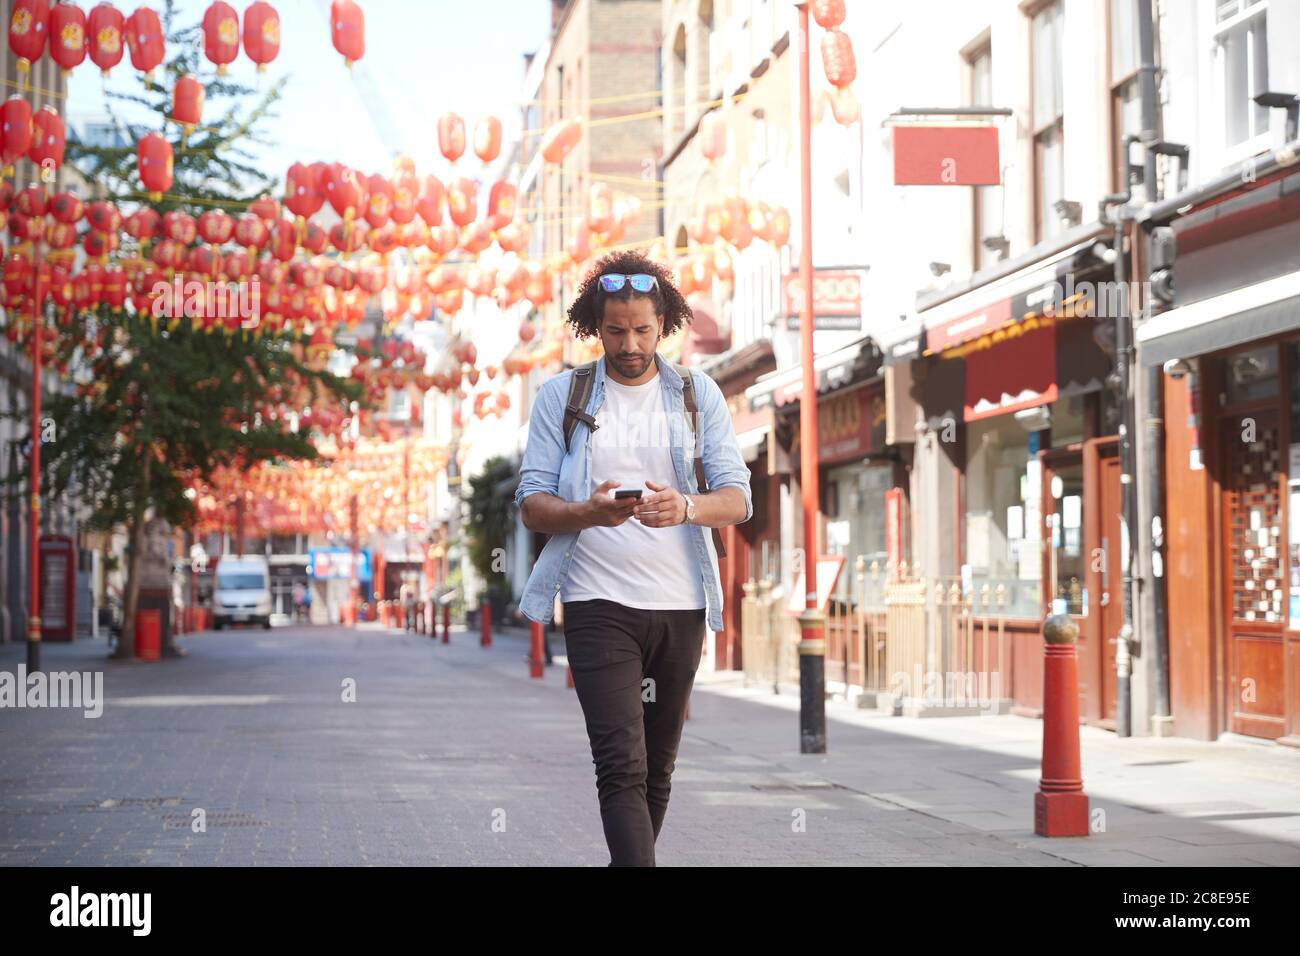 Jeune homme marchant dans la rue en regardant le smartphone, Chinatown, Londres, Royaume-Uni Banque D'Images